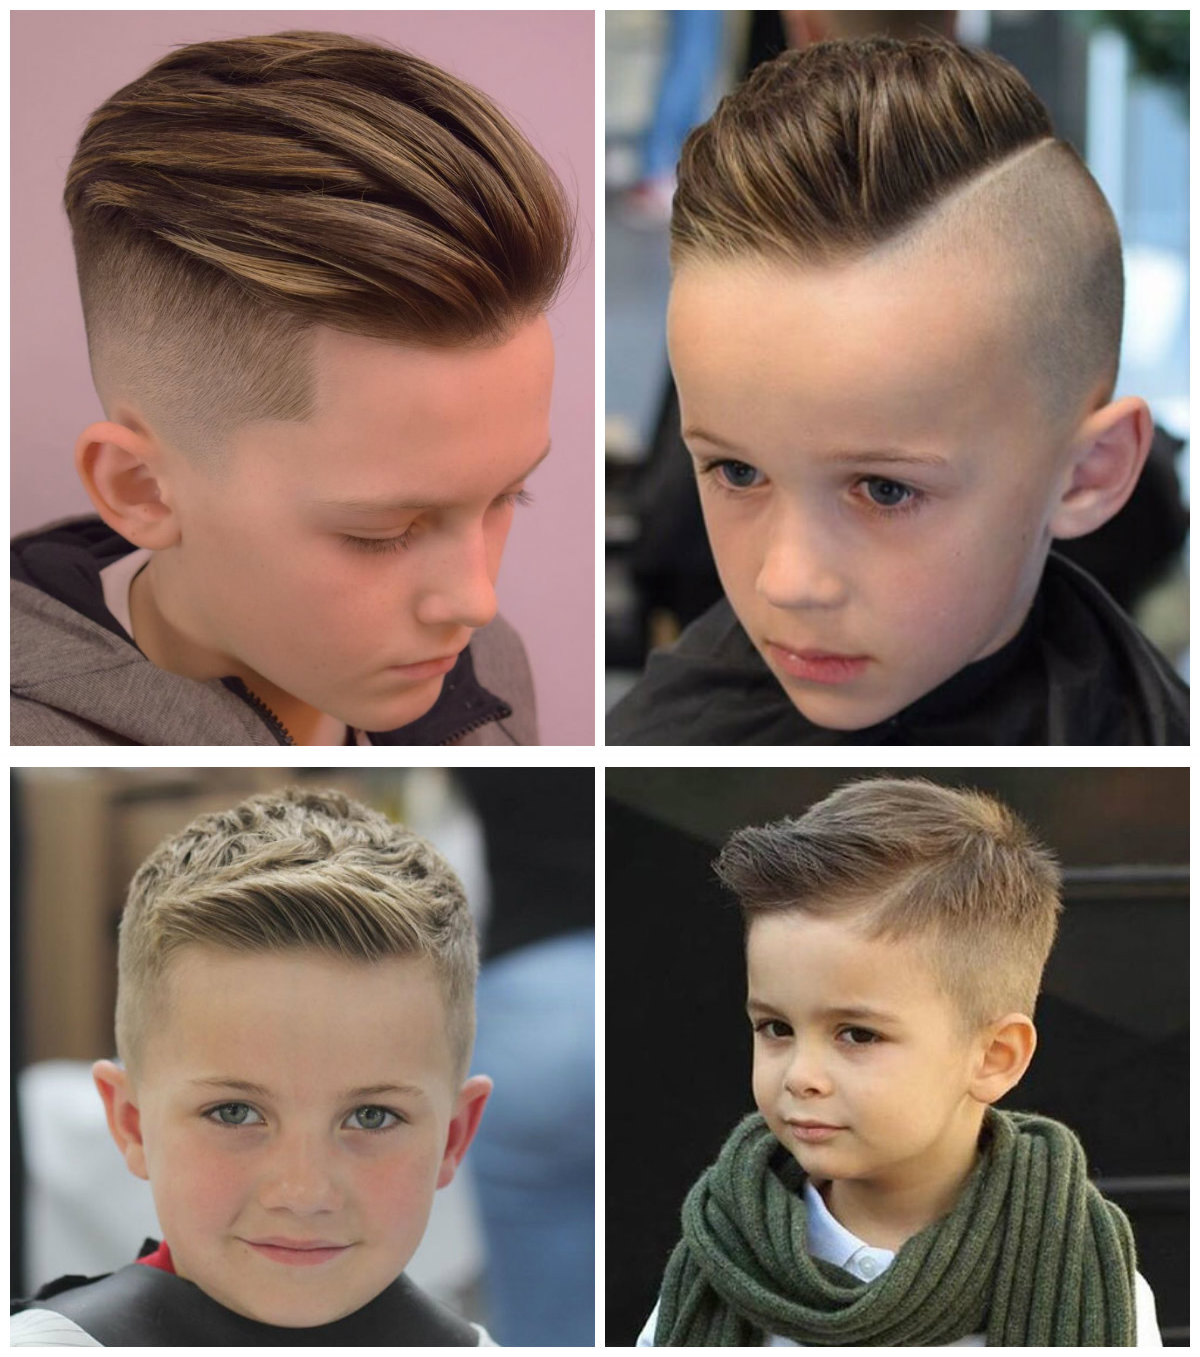 Corte de cabelo masculino infantil: 7 penteados legais para meninos |  Tendências da Moda | Постила